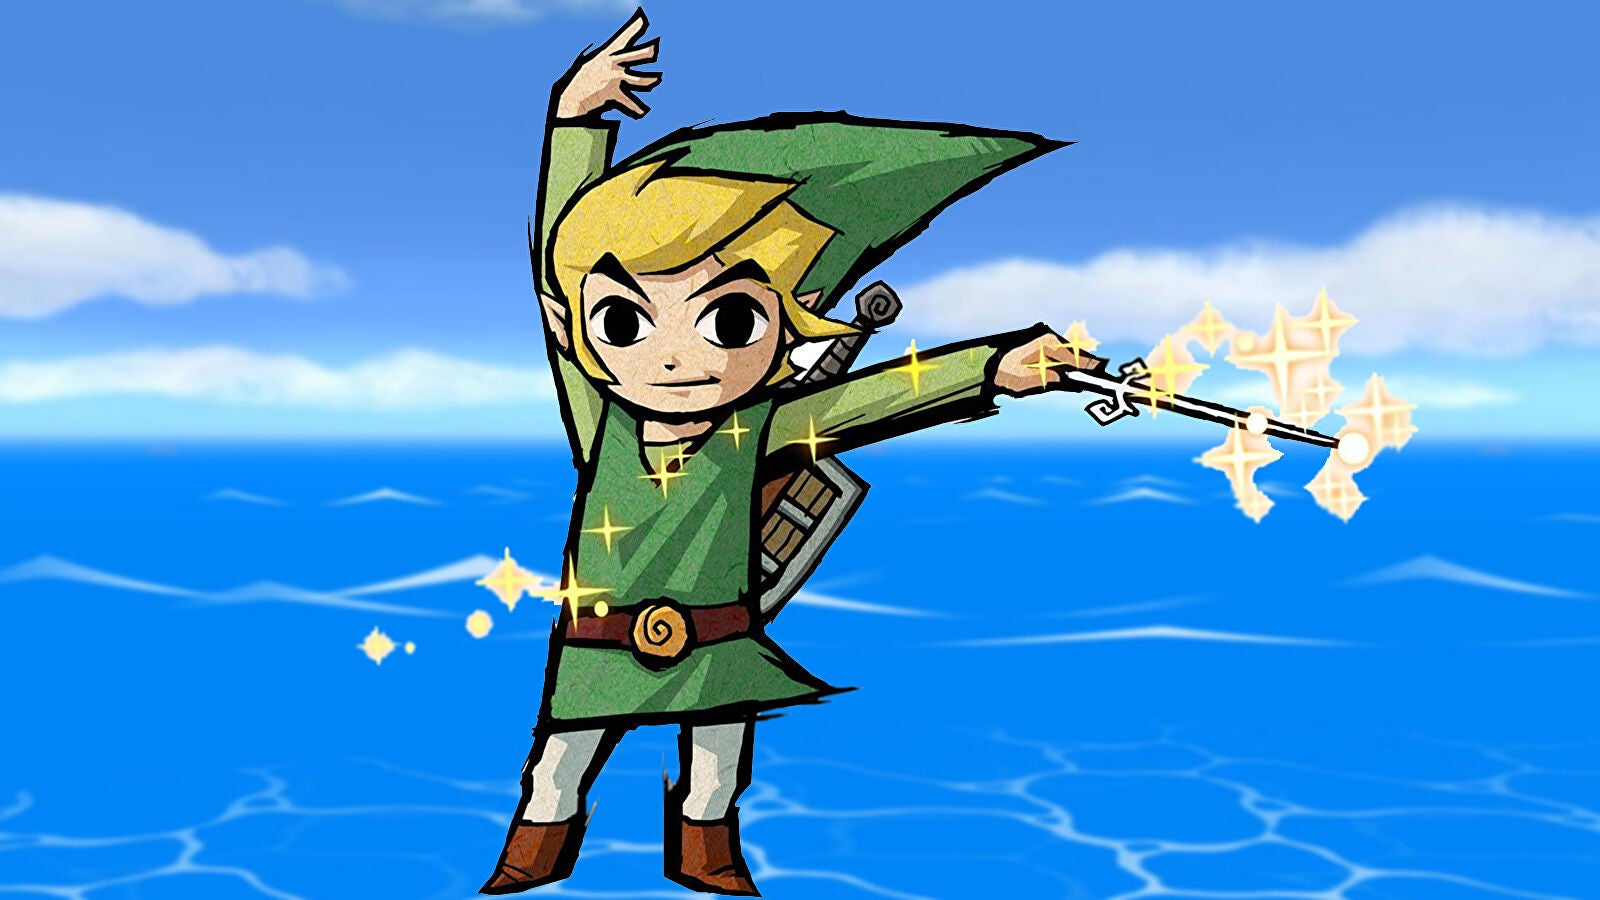 Immagine di The Legend of Zelda: The Wind Waker in origine vedeva Link suonare il theremin